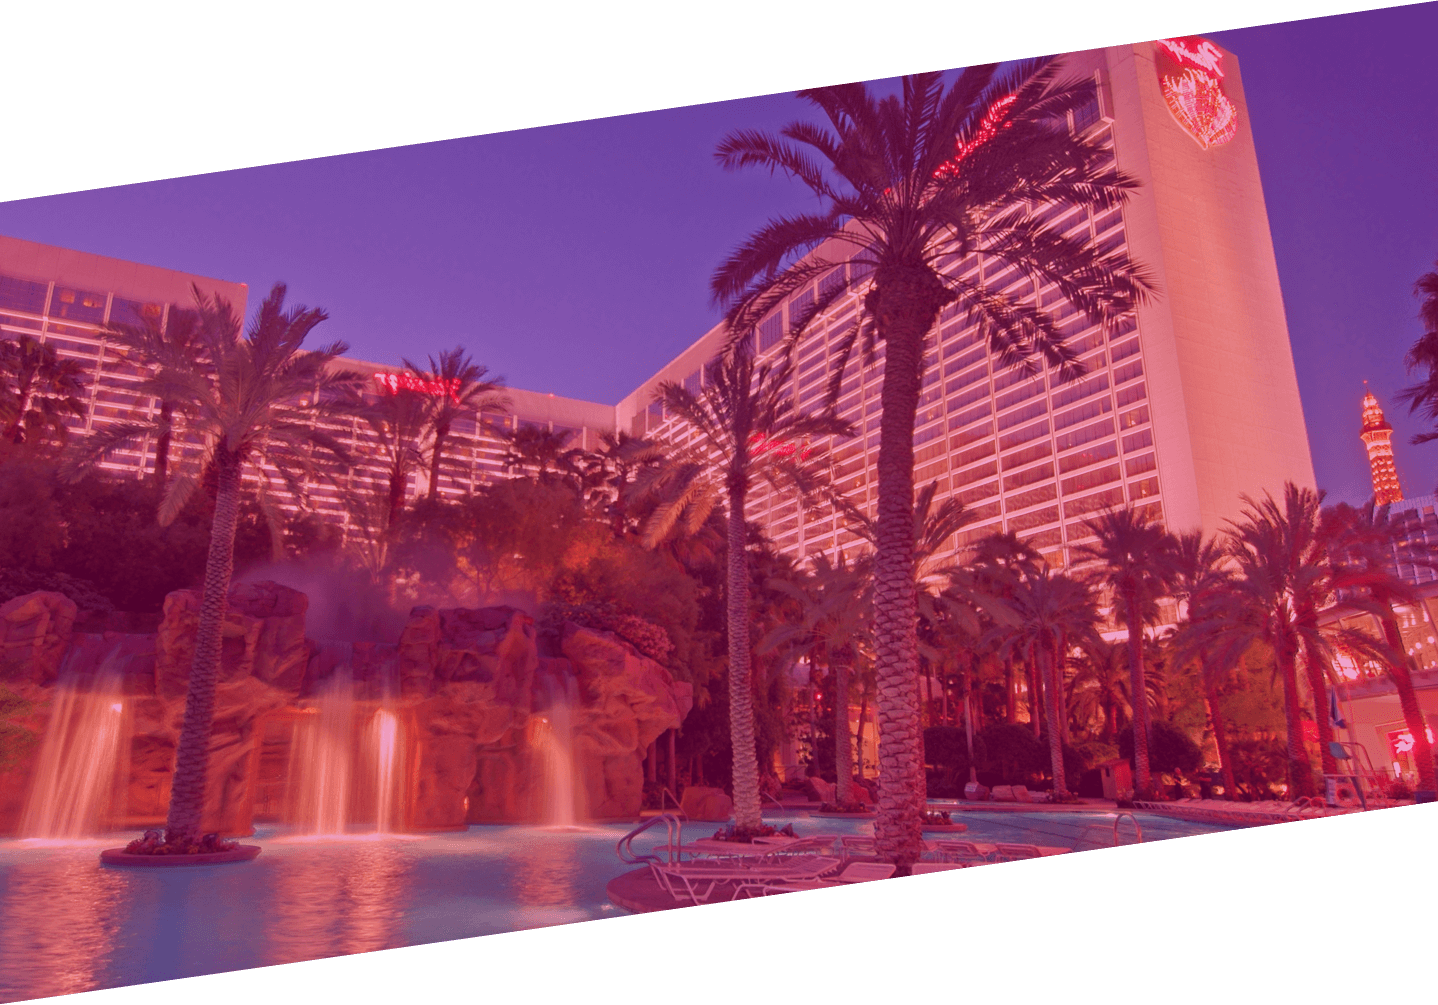 Flamingo Las Vegas Go Pool🦩and day Club - Vegas Party Pool 